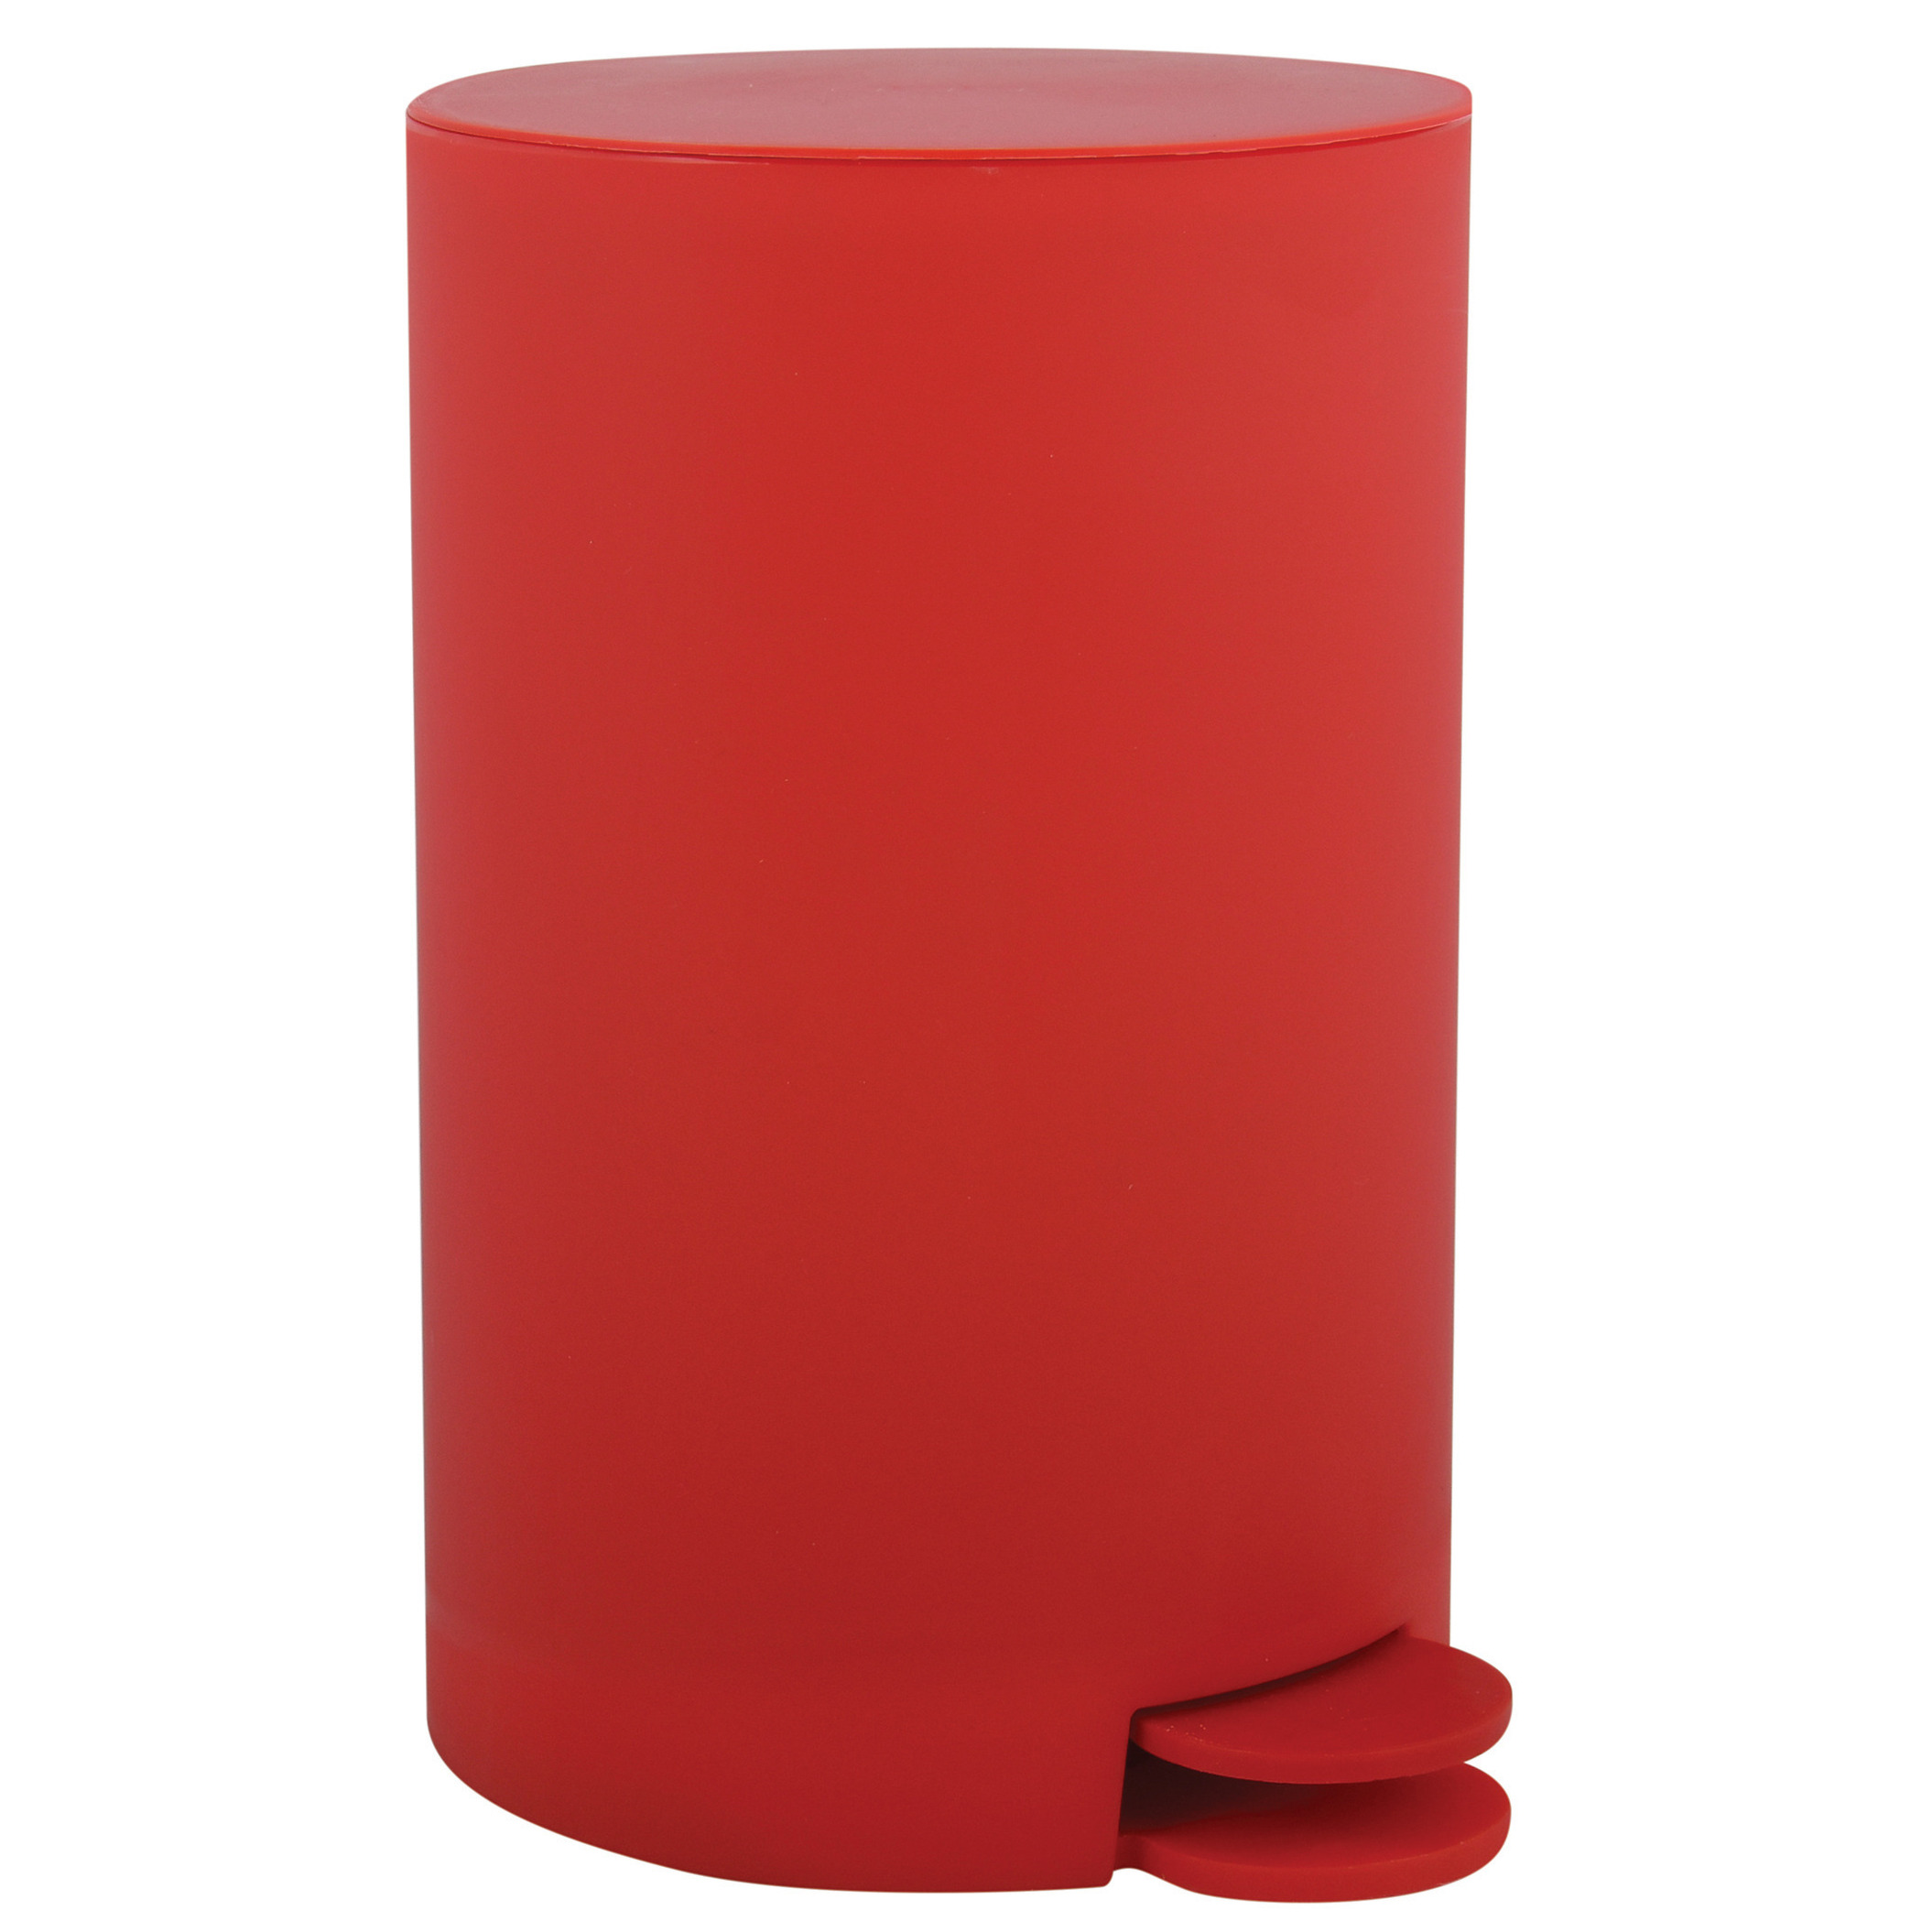 MSV kleine pedaalemmer kunststof rood 3L 15 x 27 cm Badkamer-toilet